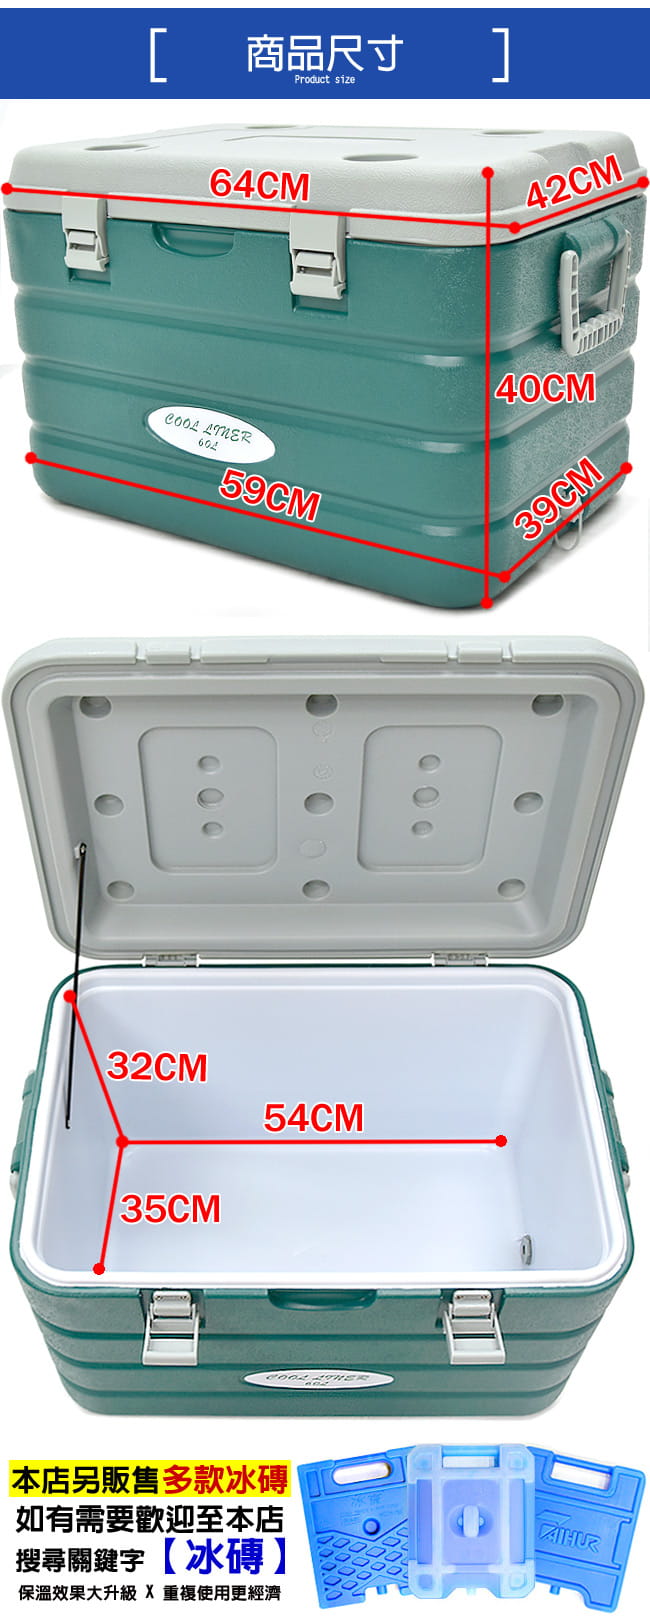 攜帶式60L冰桶  (60公升冰桶行動冰箱釣魚冰桶) 6